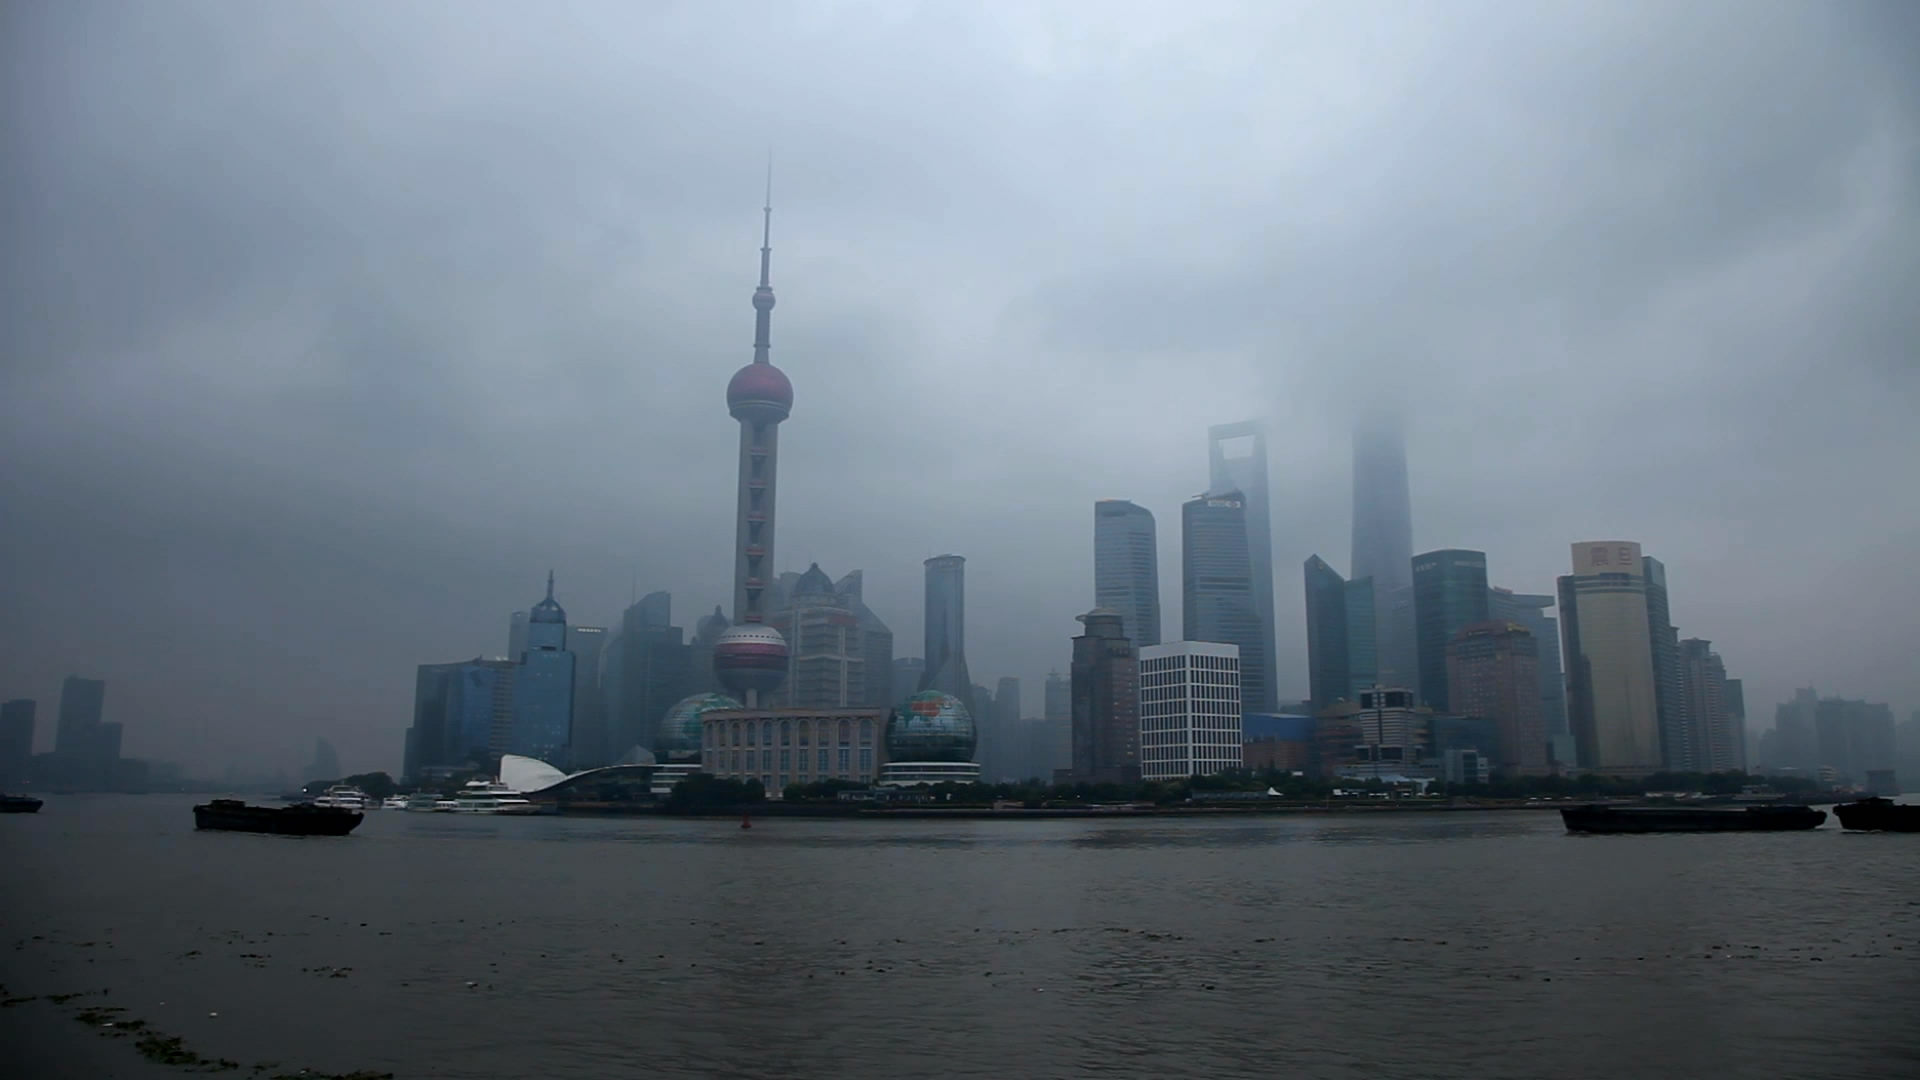 Huangpu folyó tengerjáró hajó időben eltelt fotózás